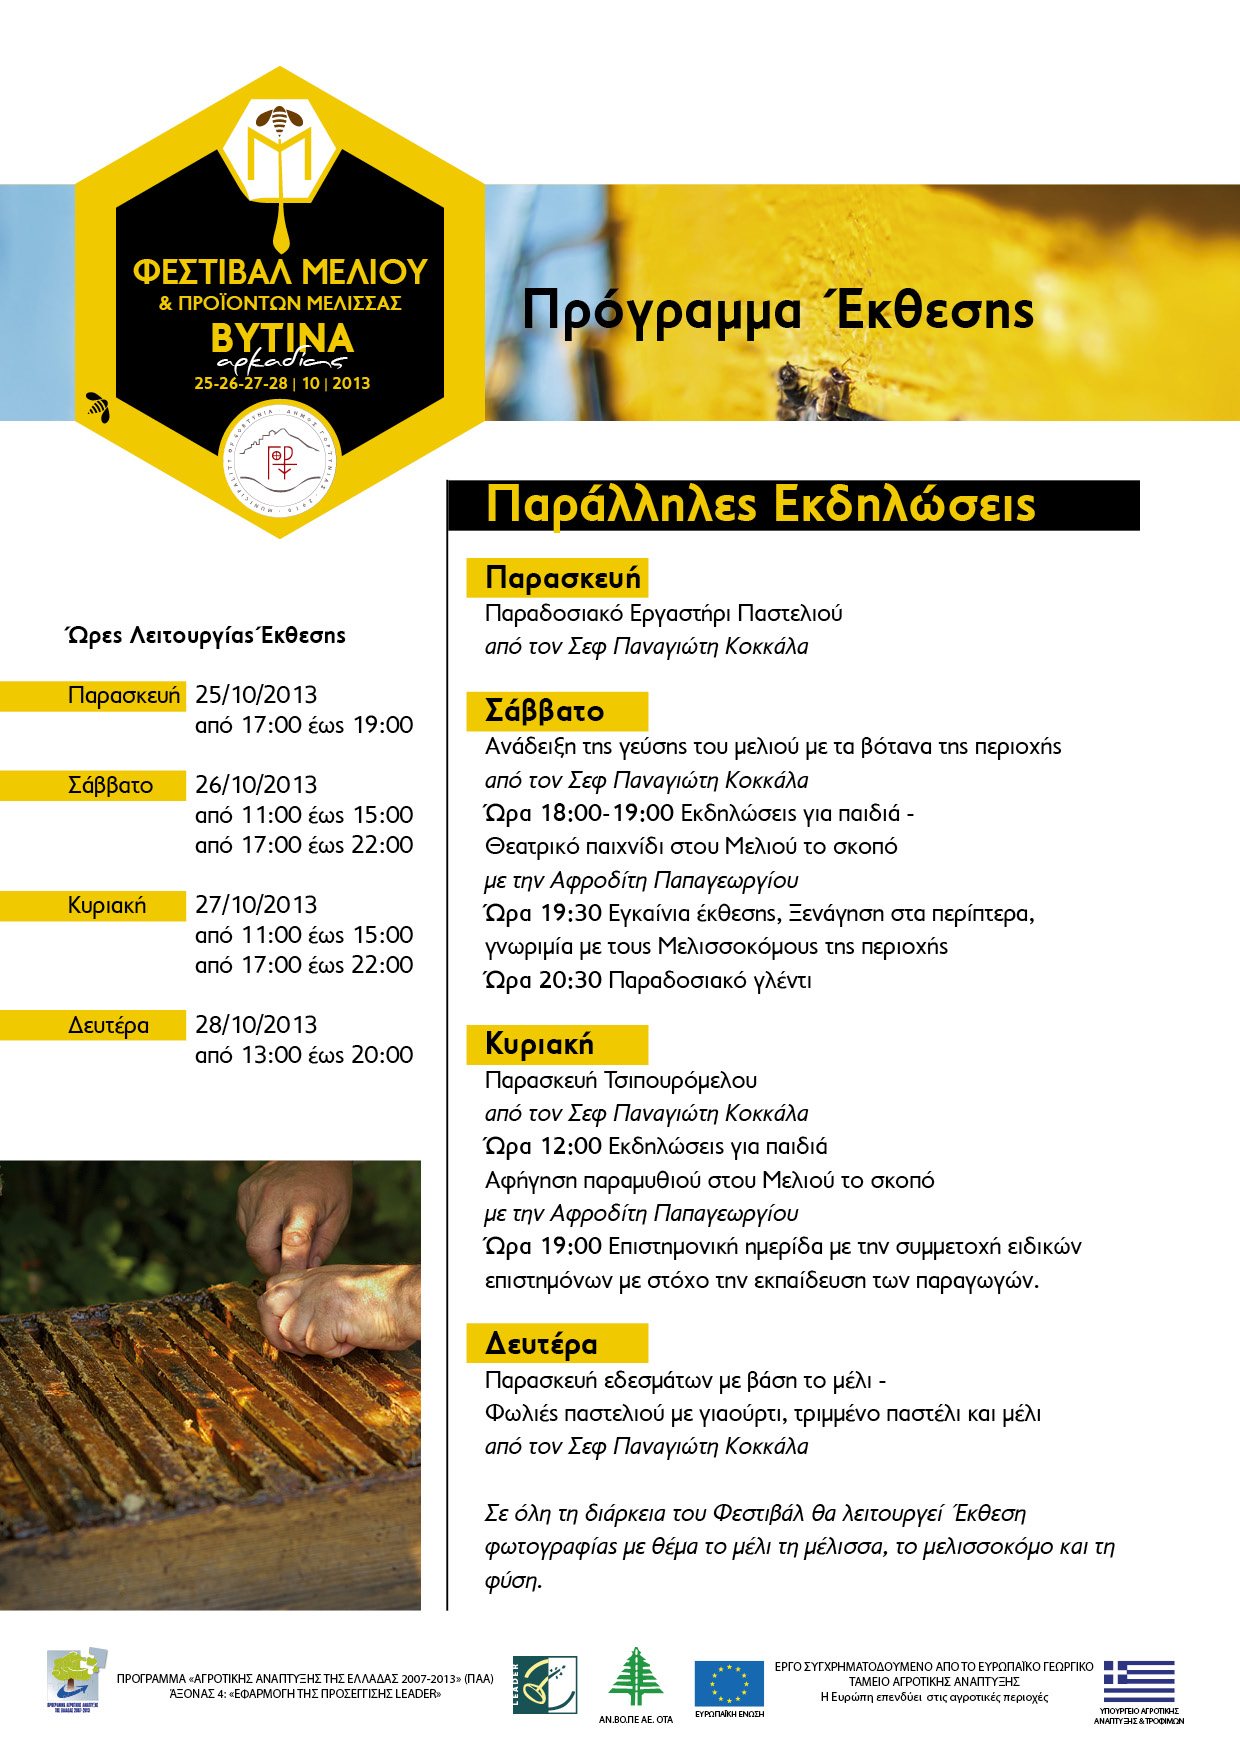 Το πρόγραμμα των εκδηλώσεων για το Φεστιβάλ Μελιού στη Βυτίνα